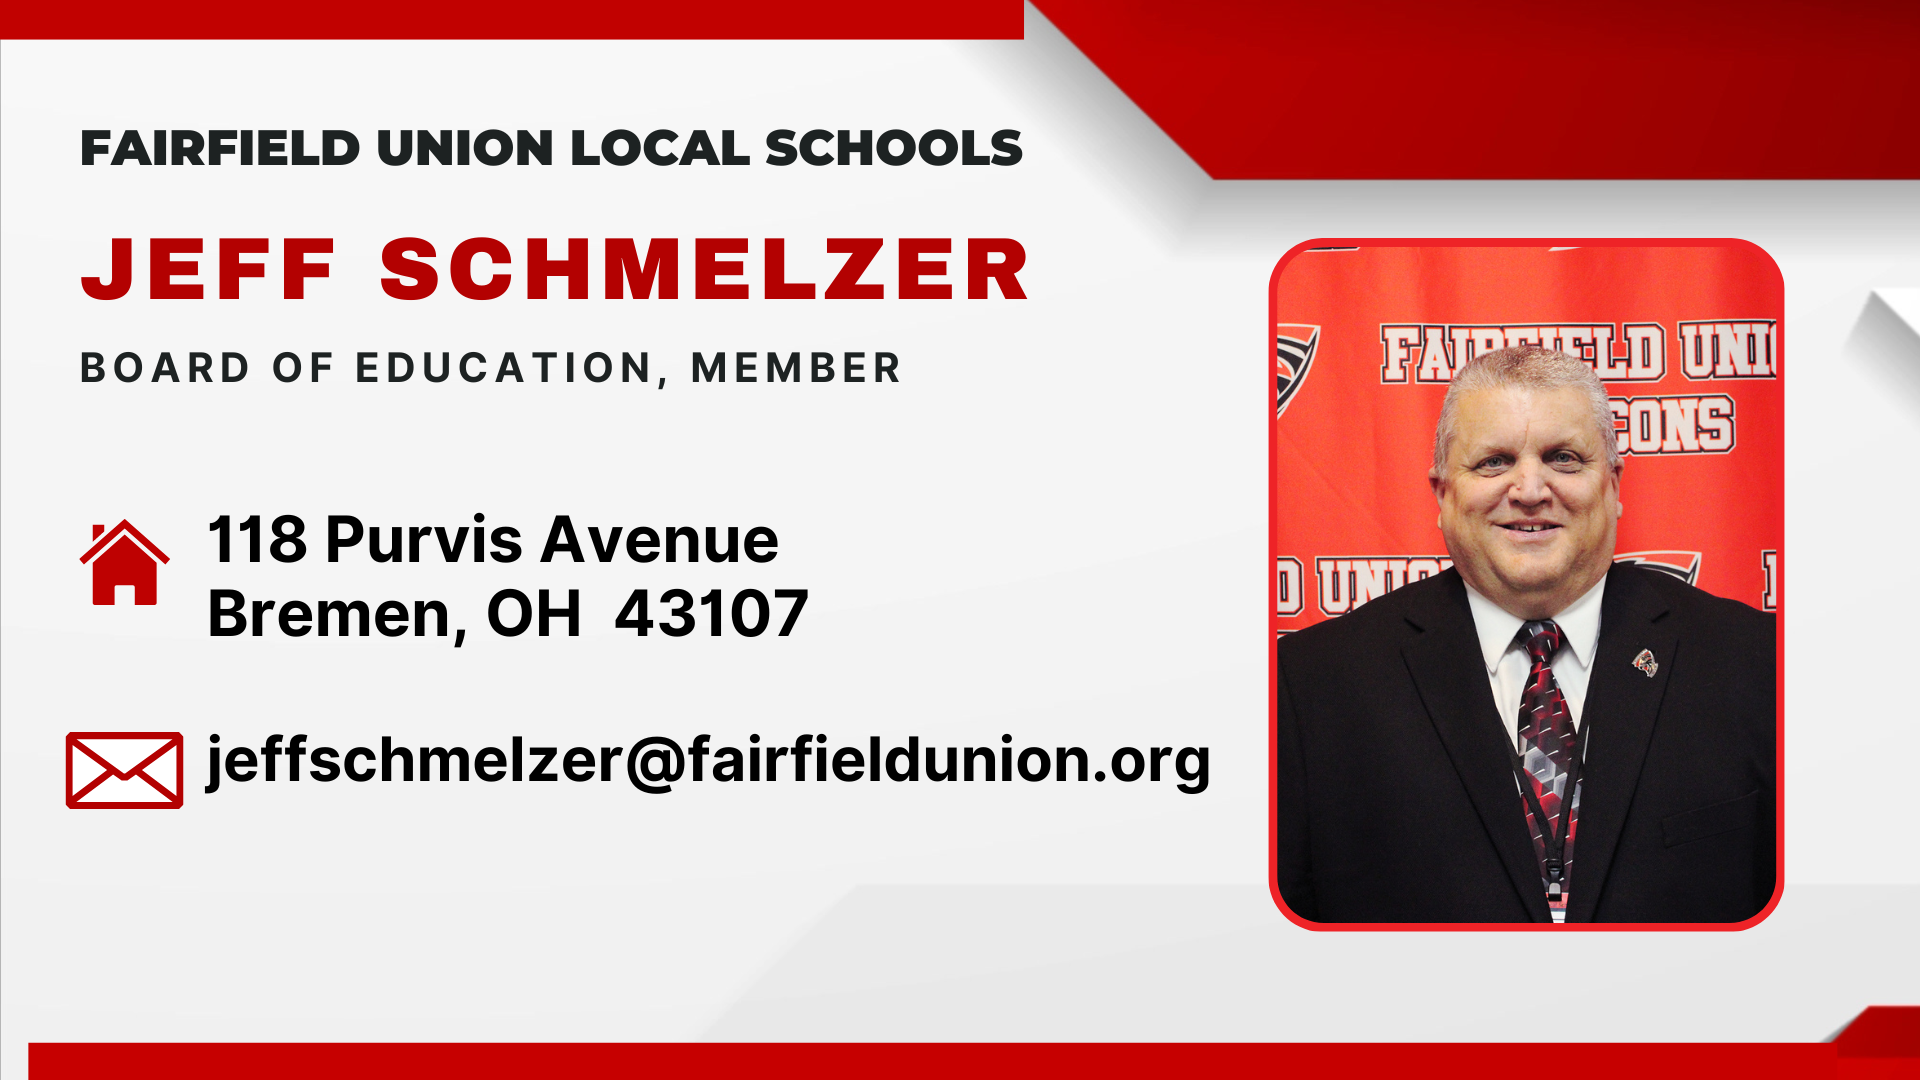 Jeff Schmelzer, Board of Education Member